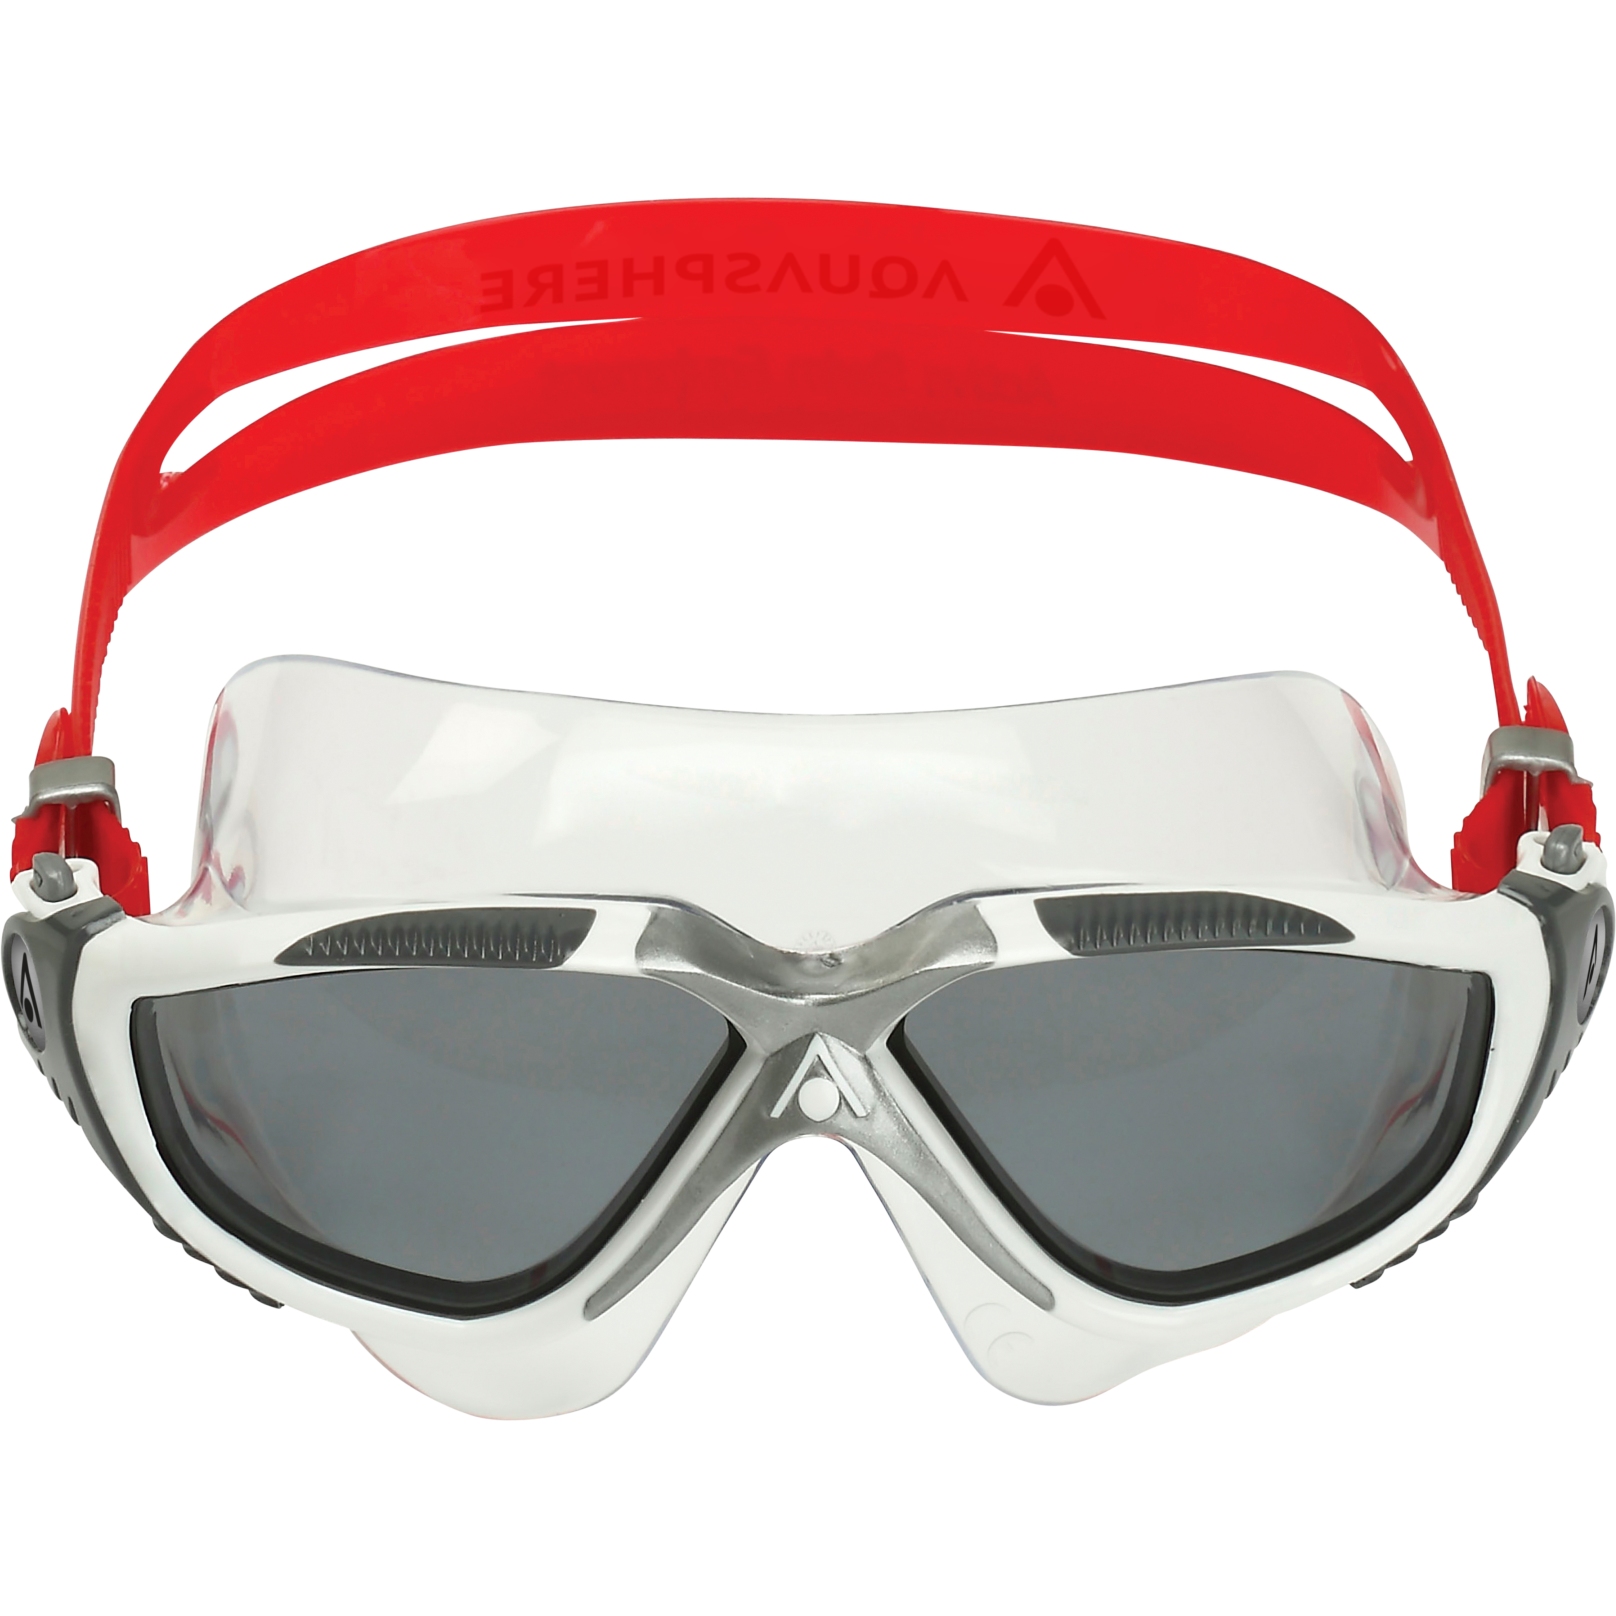 Produktbild von AQUASPHERE Vista Schwimmbrille - Smoke getönt - Weiß/Rot